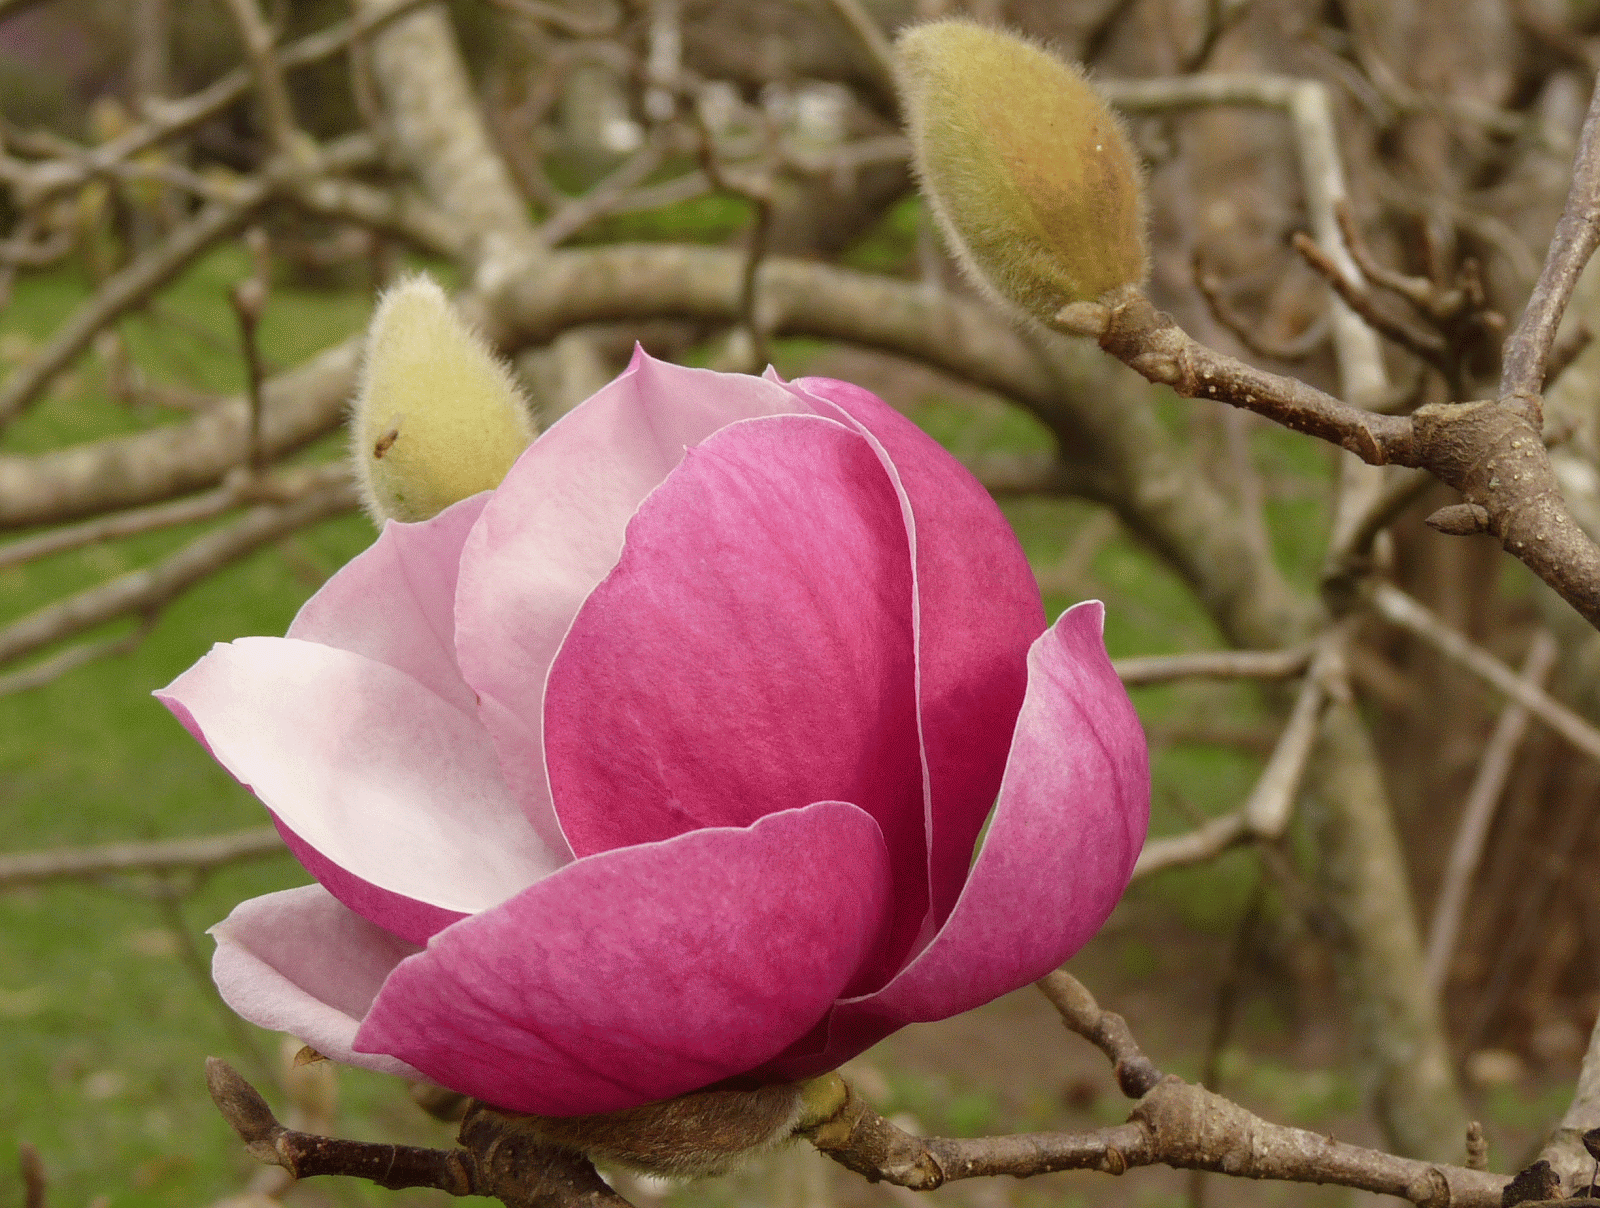 En el jardin: mirá las magnolias en flor...! no son divinas?